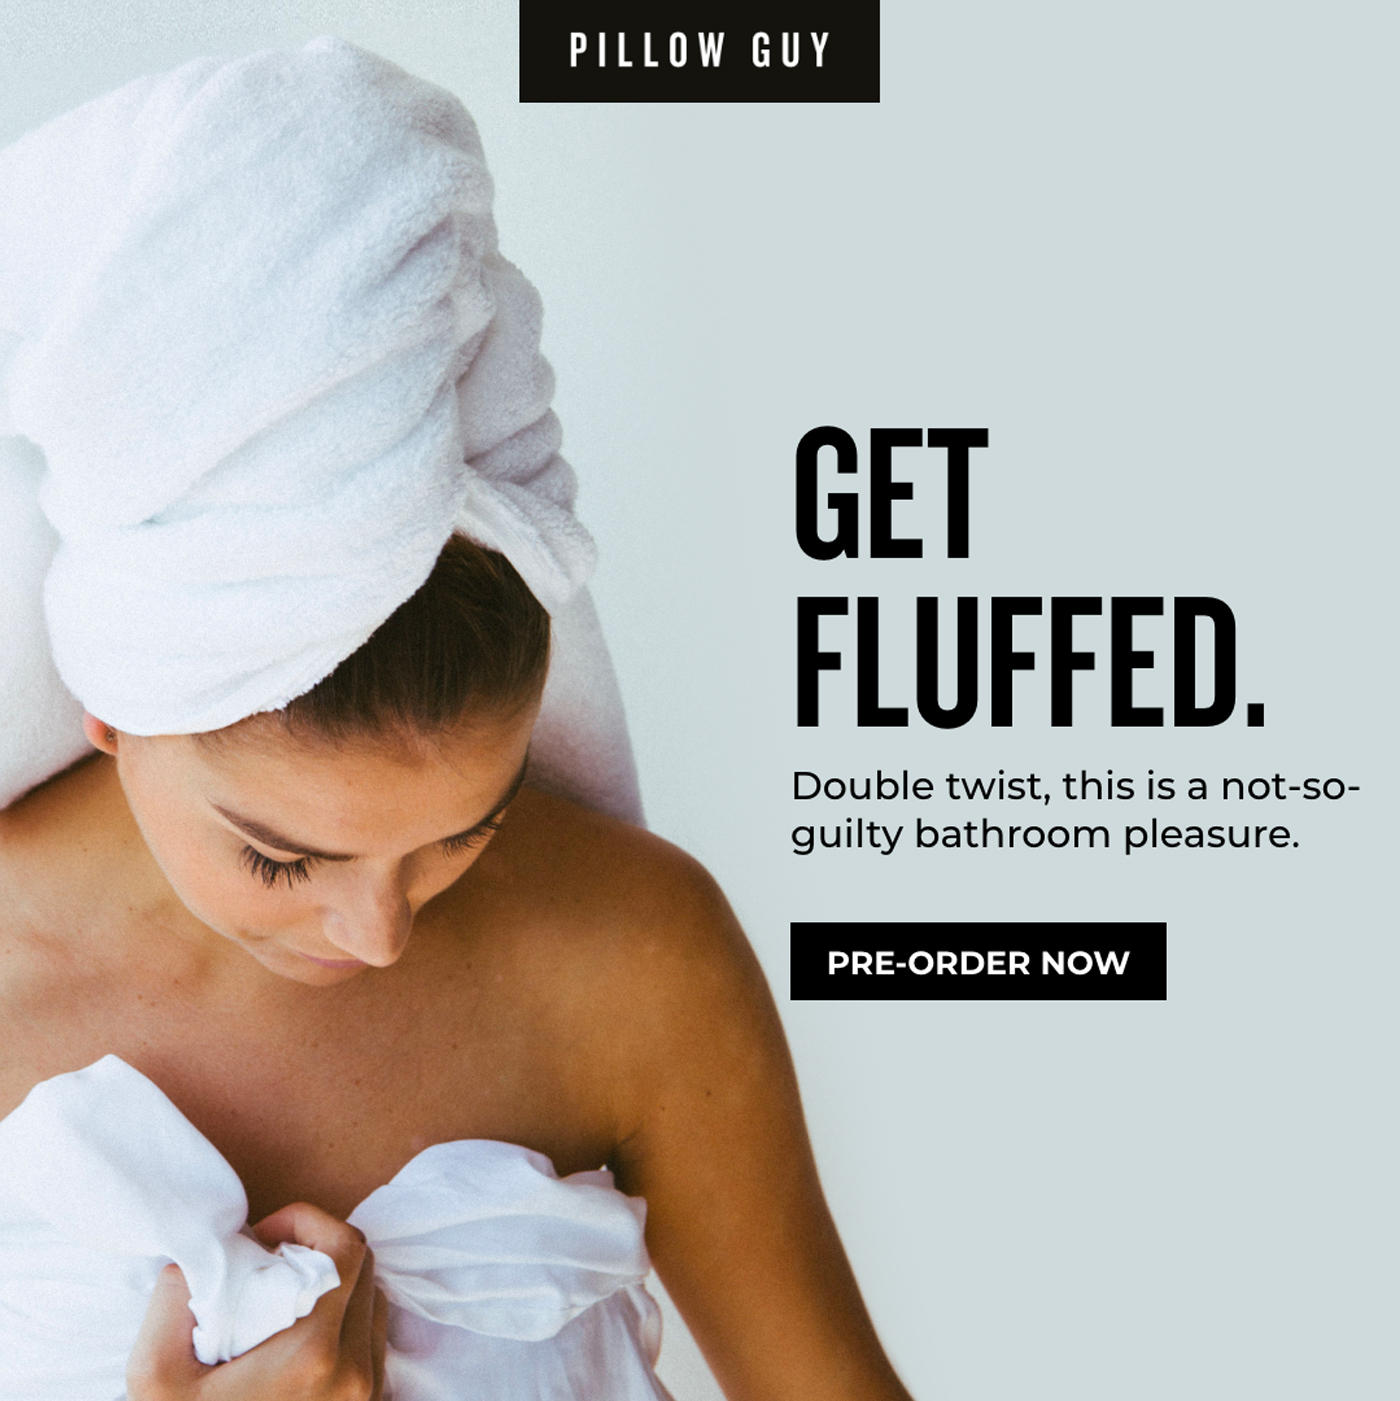 Pillow Guy Get Fluffed Facebook Ad Design